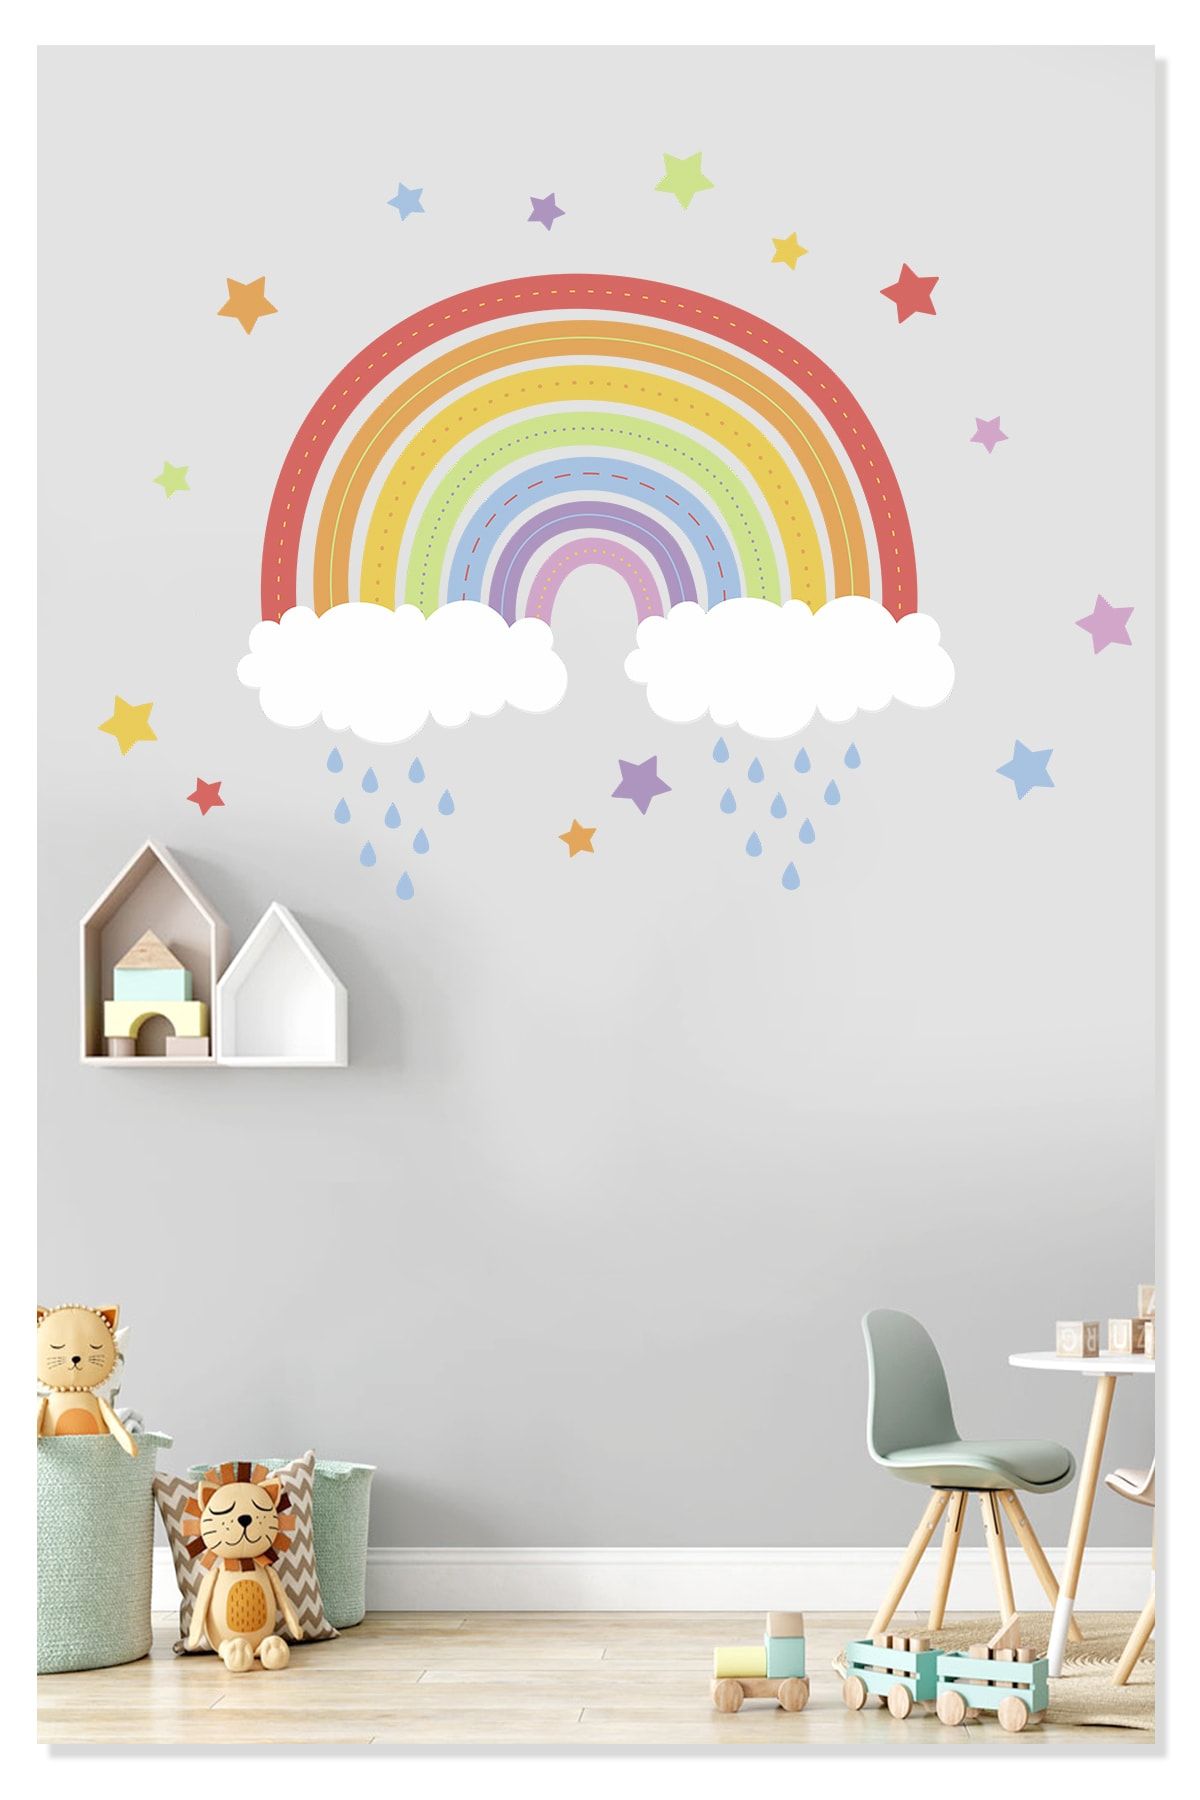 Sticker Sepetim Gökkuşağı Renkli Yıldızlar Bulutlar Ve Yağmur Dekoratif Çocuk Odası Duvar Sticker Duvar Süsü